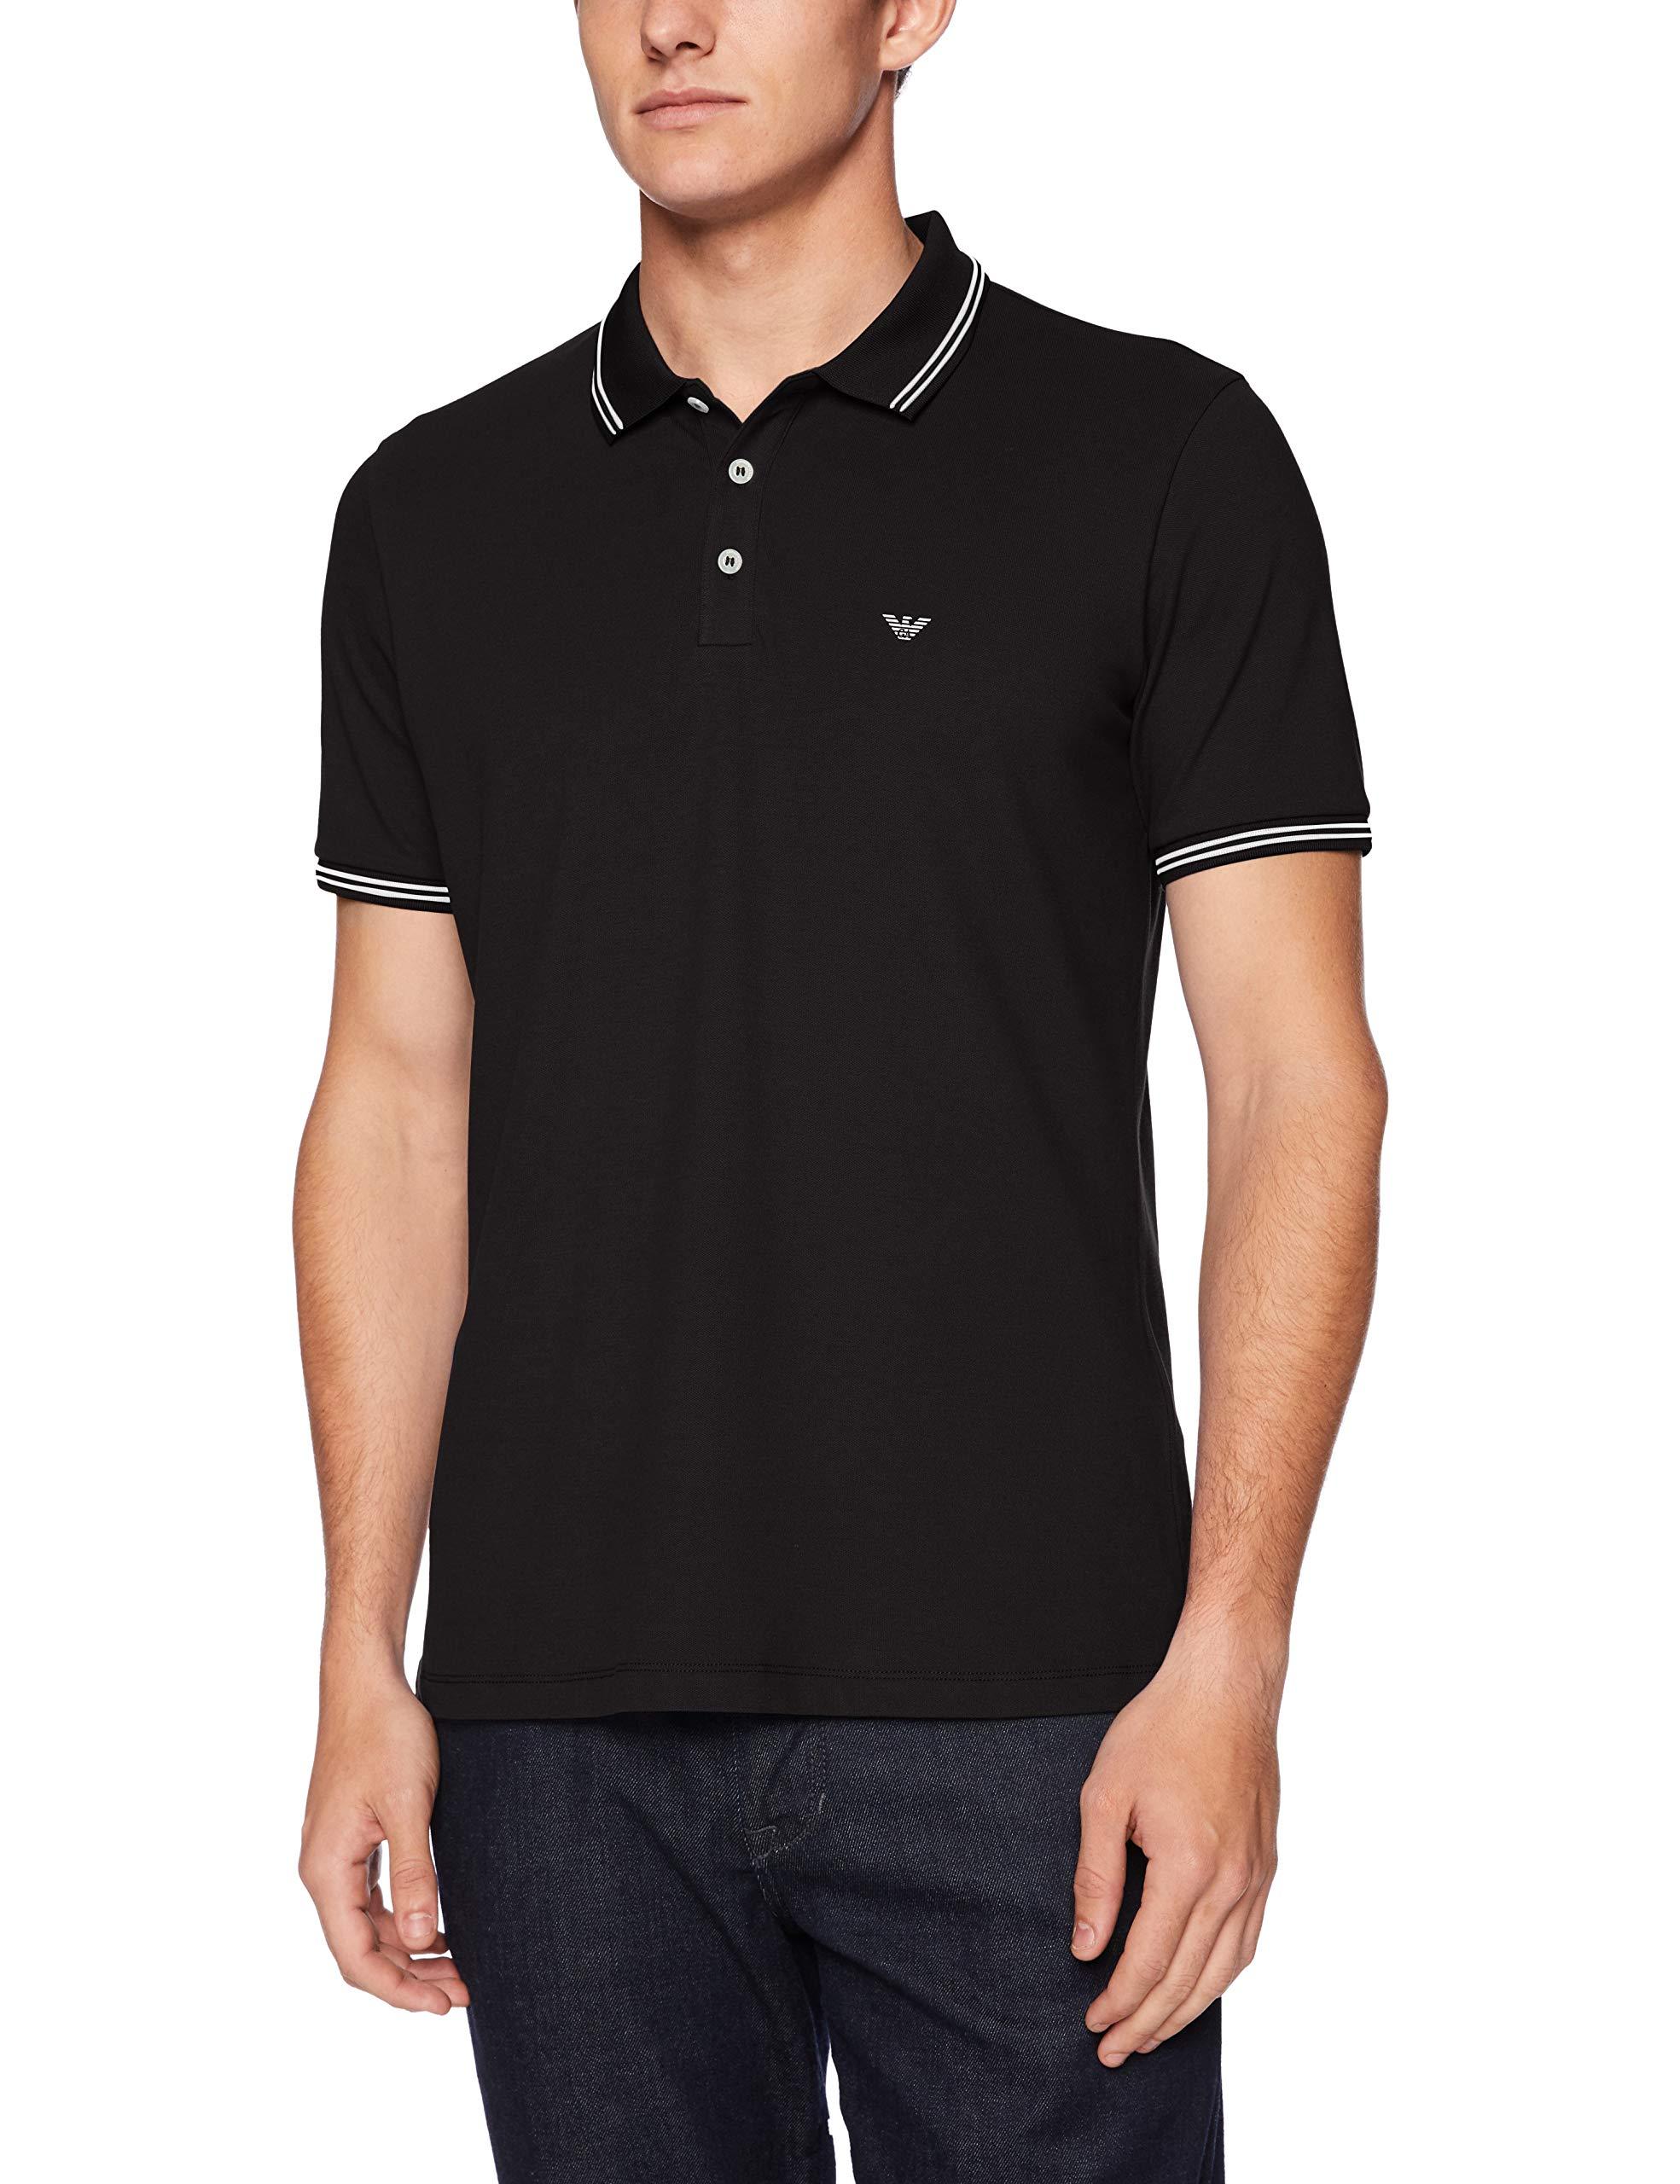 Emporio Armani Cotton Ea Collar Black Polo Shirt for Men - Lyst